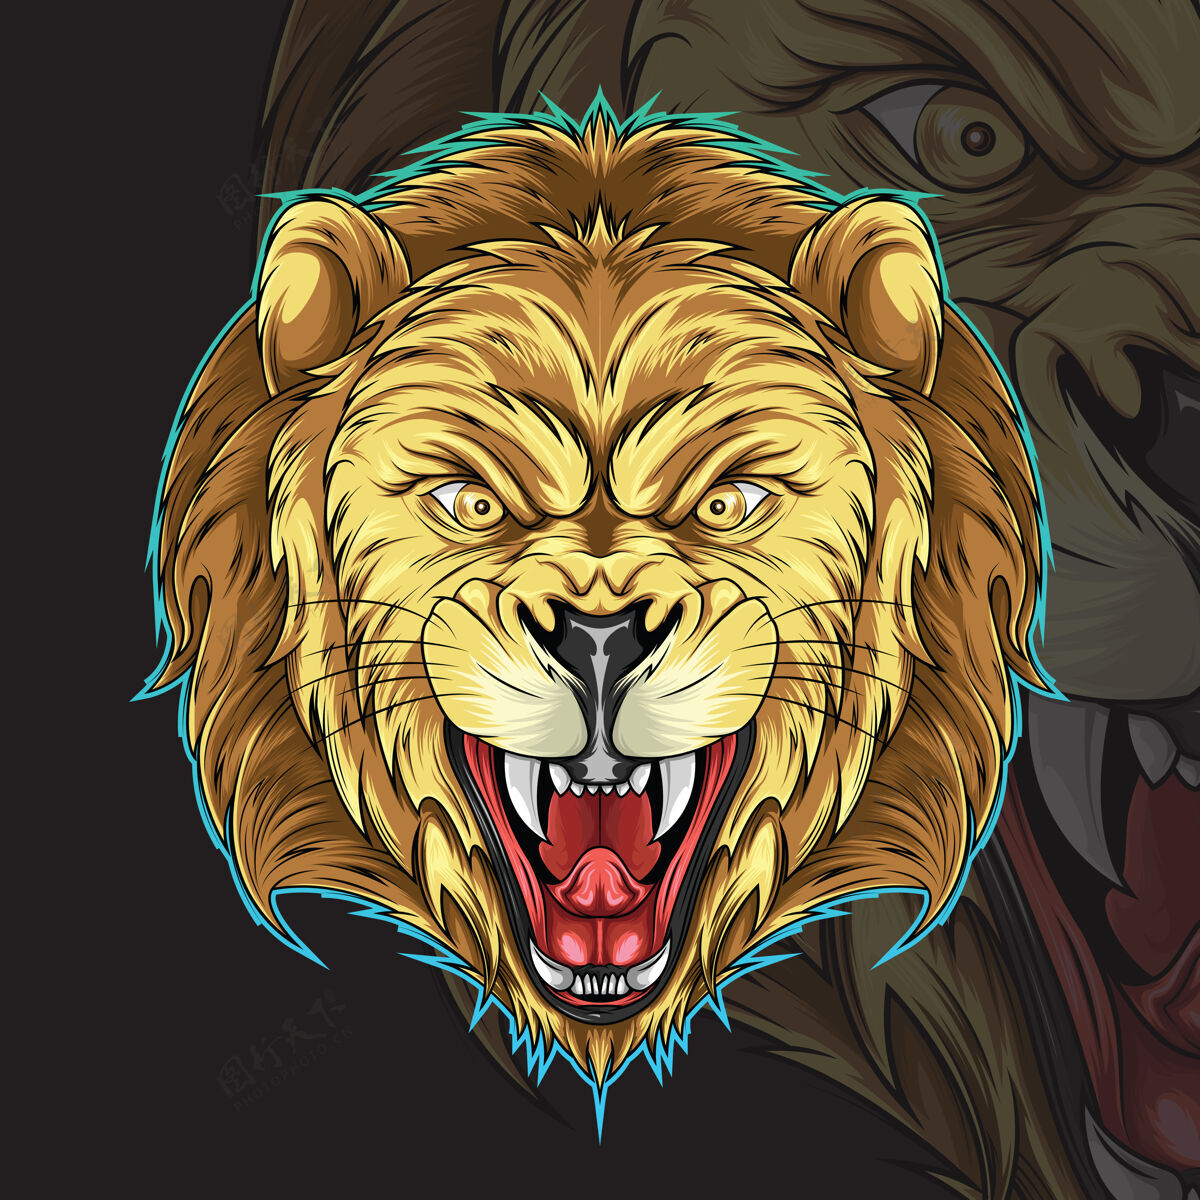 雄性狮子头纹身插图手绘狮子座食肉动物